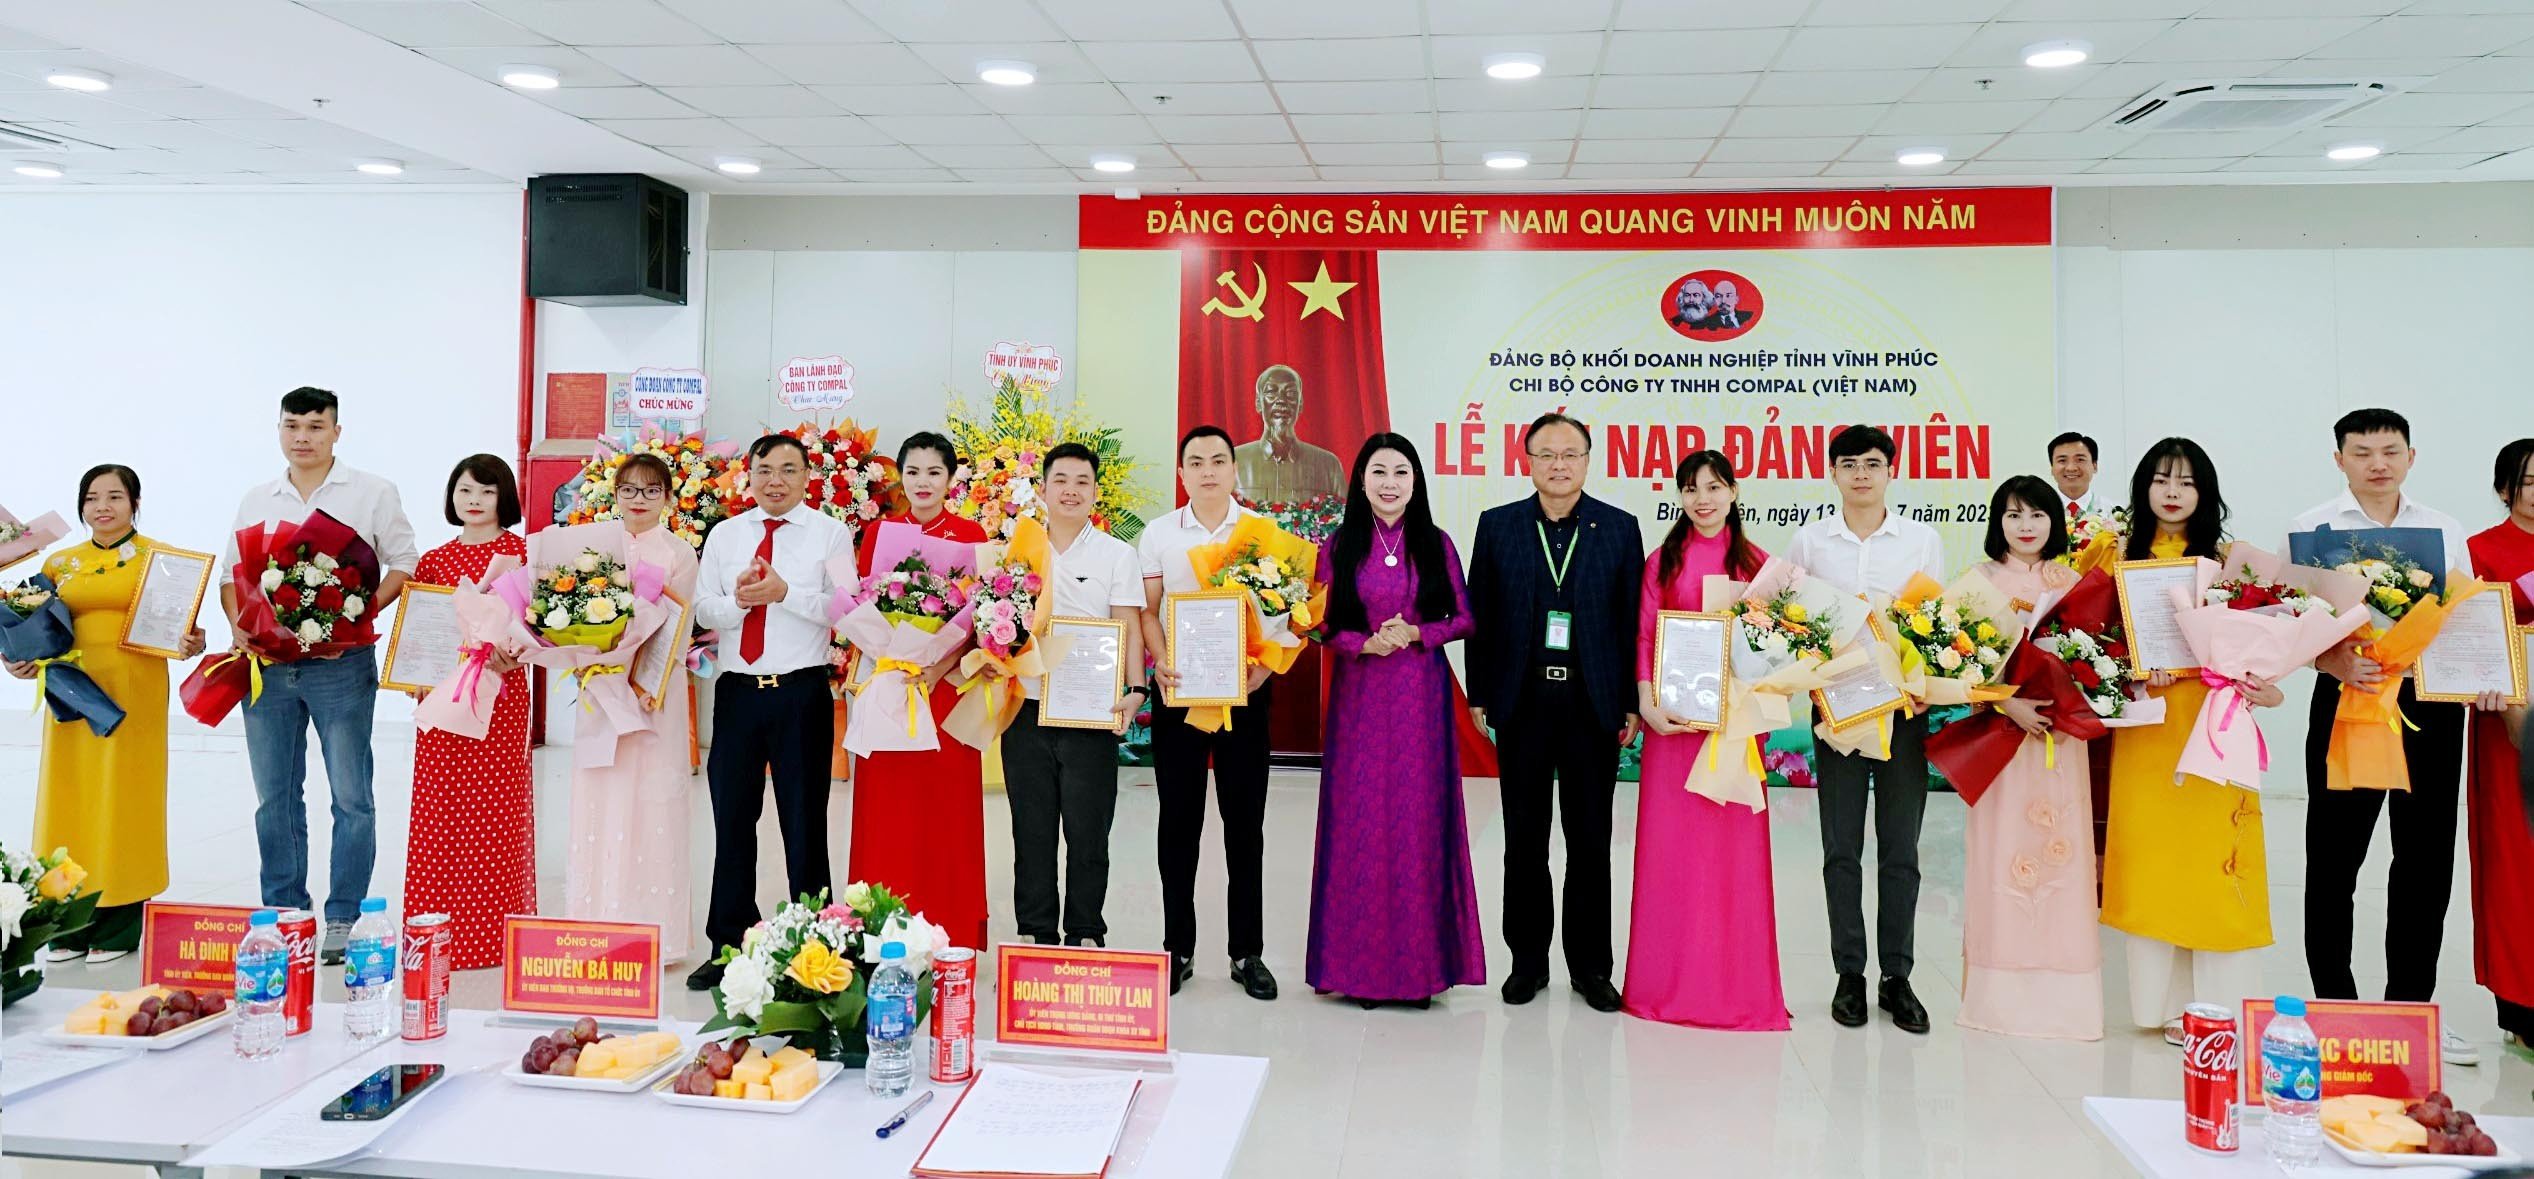 Bí thư Tỉnh ủy Hoàng Thị Thúy Lan trao quyết định kết nạp đảng cho 17 quần chúng ưu tú của Công ty TNHH Compal Việt Nam. Ảnh: Trà Hương